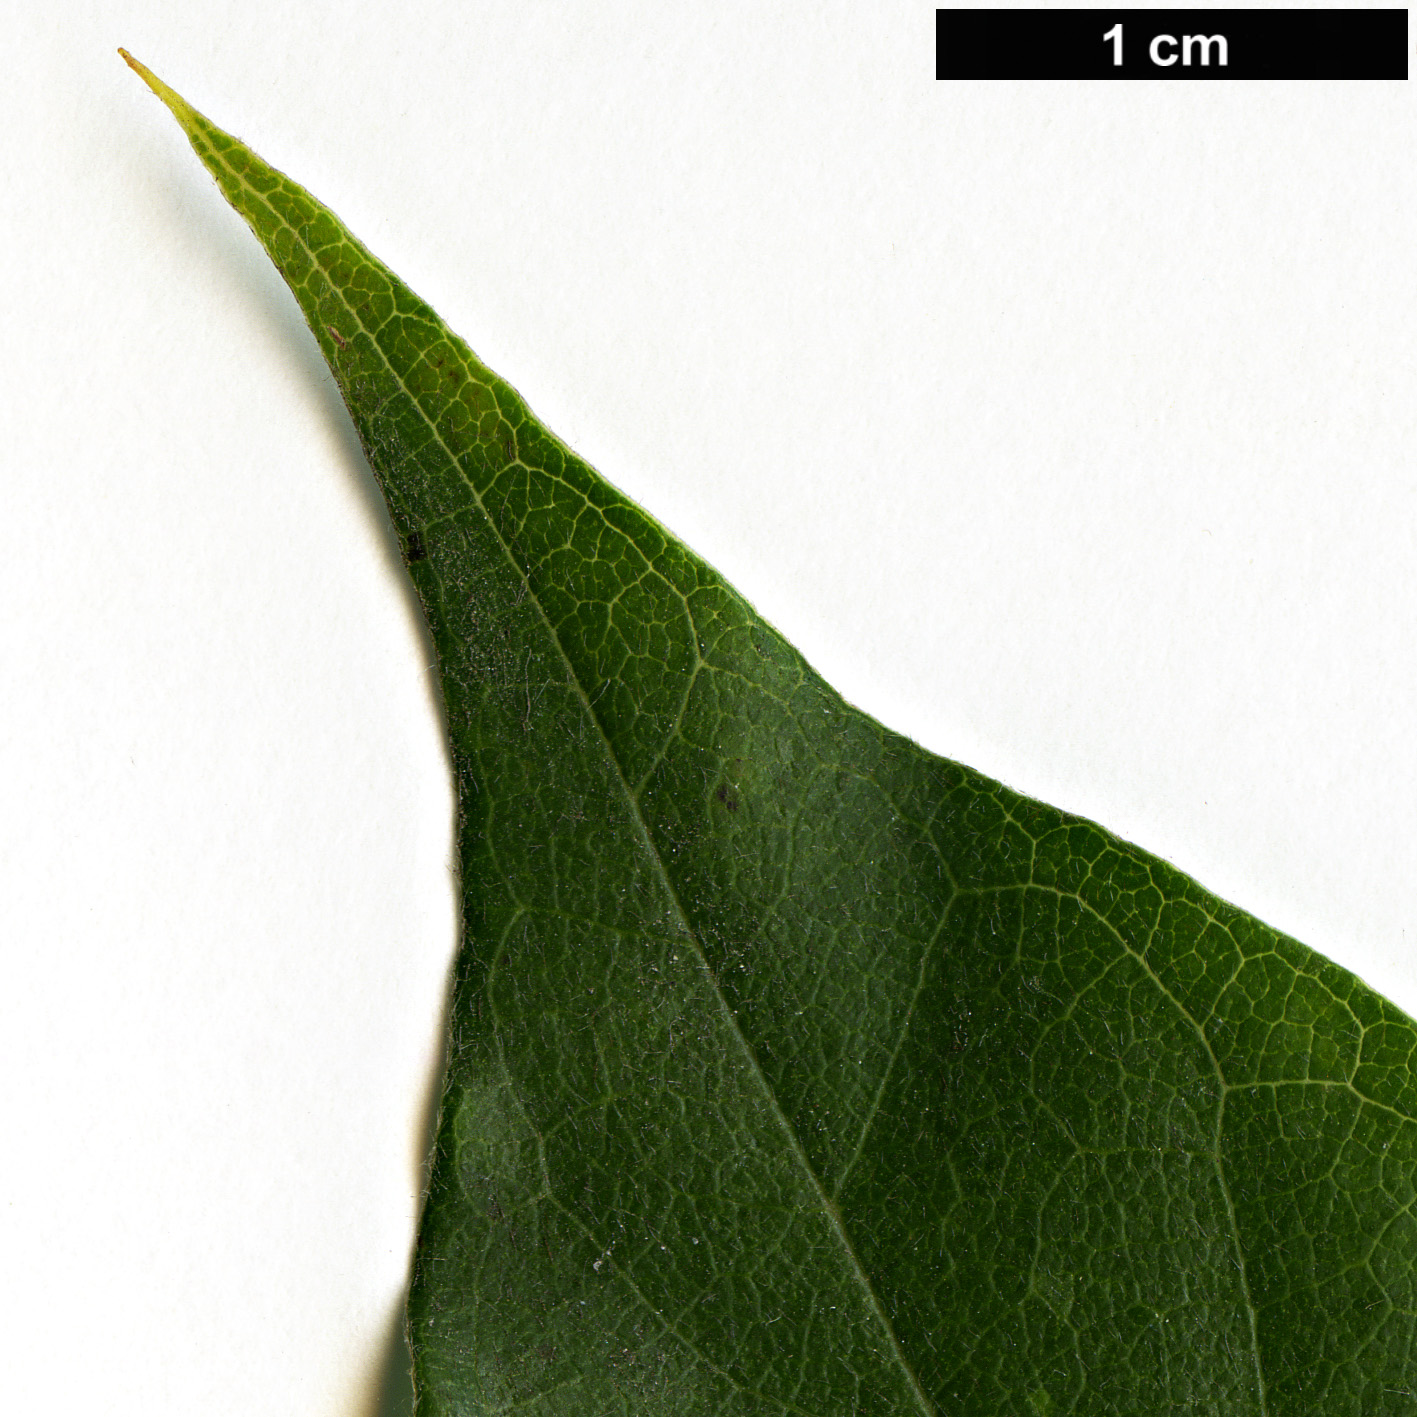 High resolution image: Family: Nyssaceae - Genus: Nyssa - Taxon: sylvatica